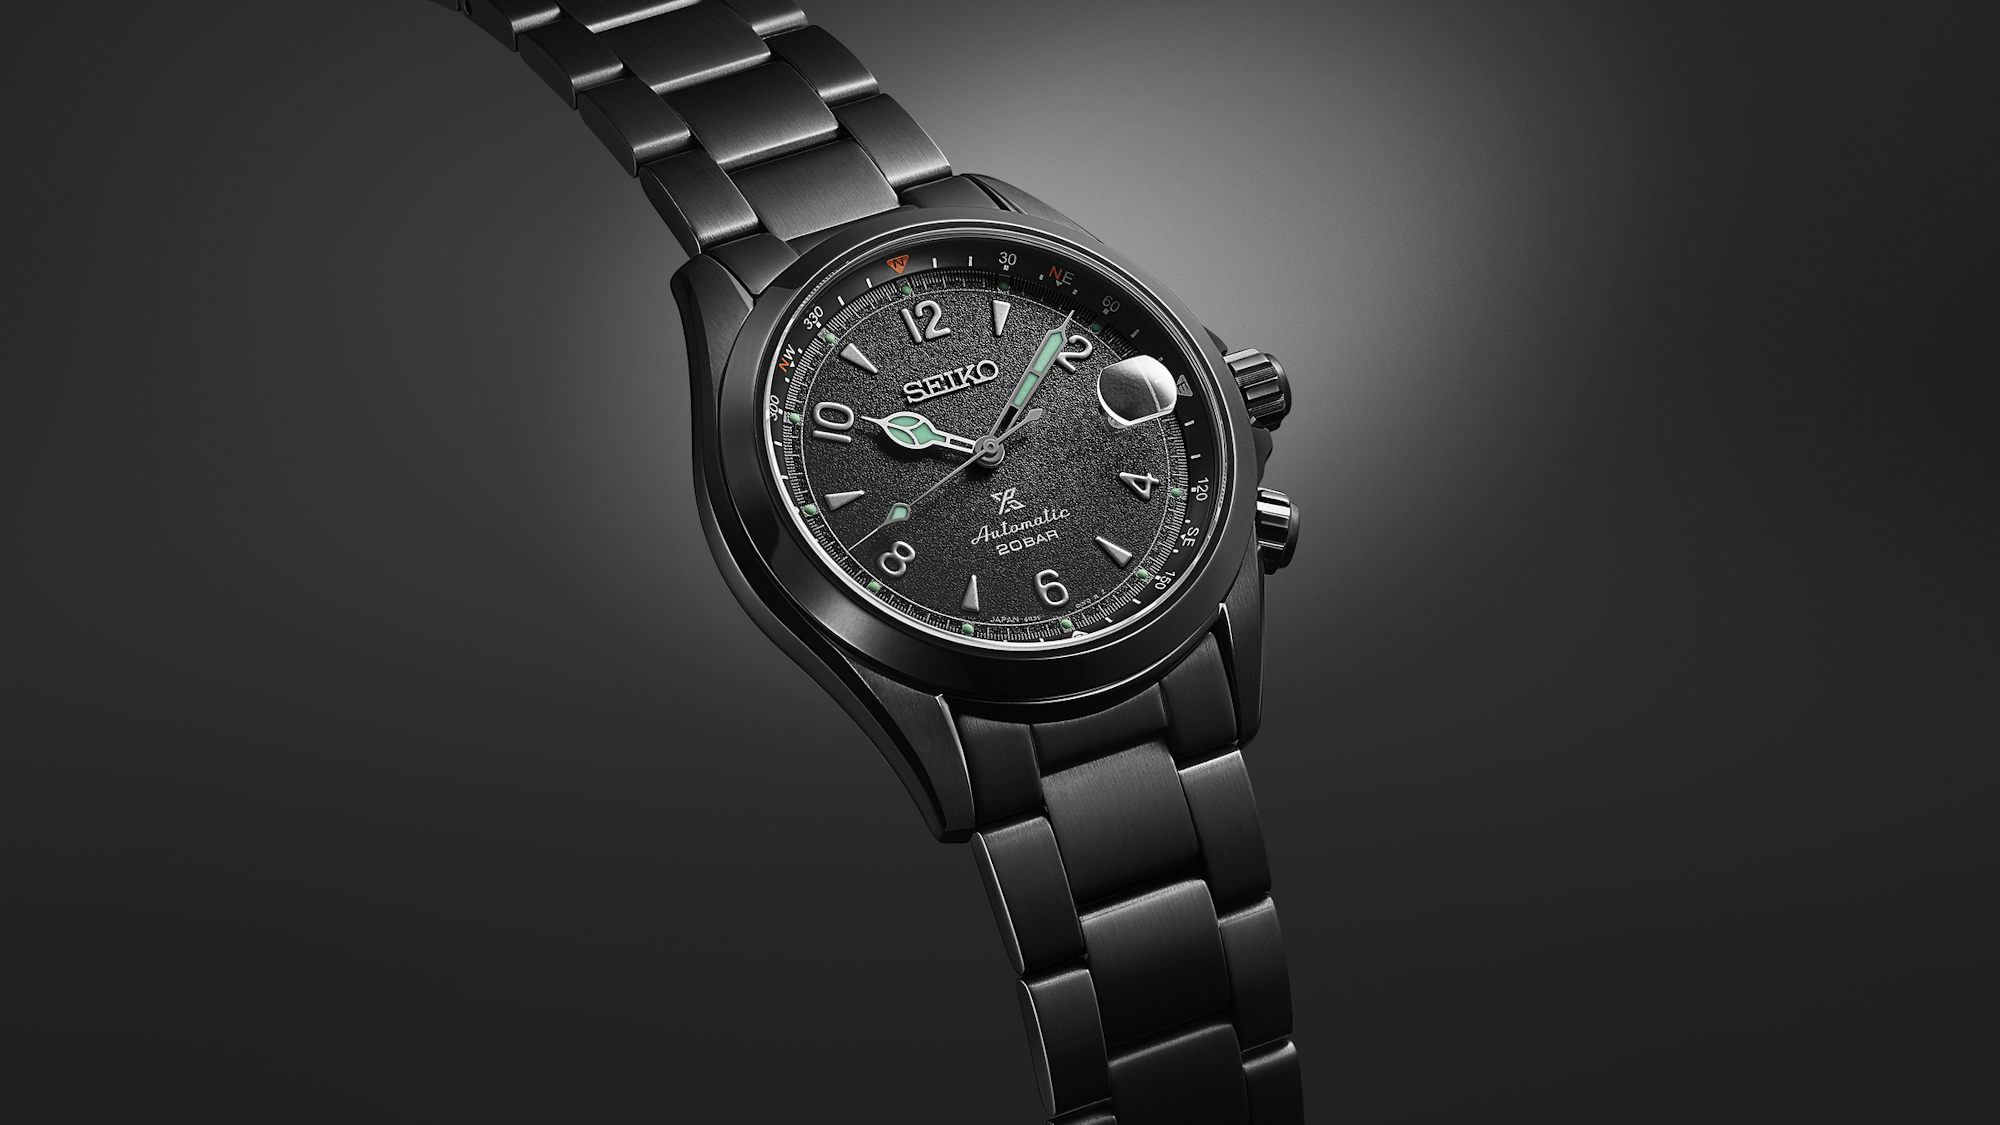 SPB337 watch